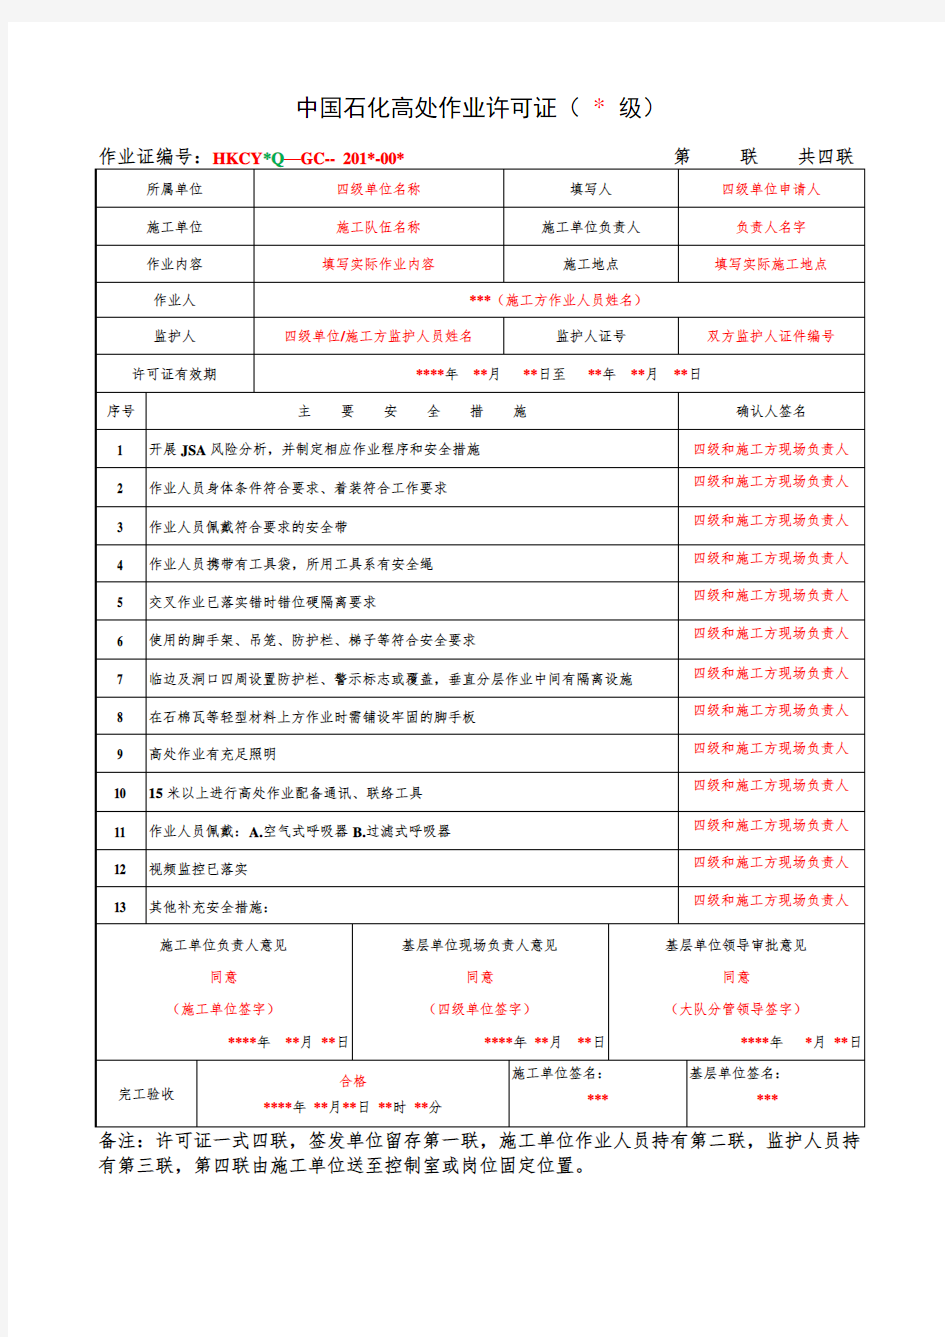 中国石化高处作业许可证